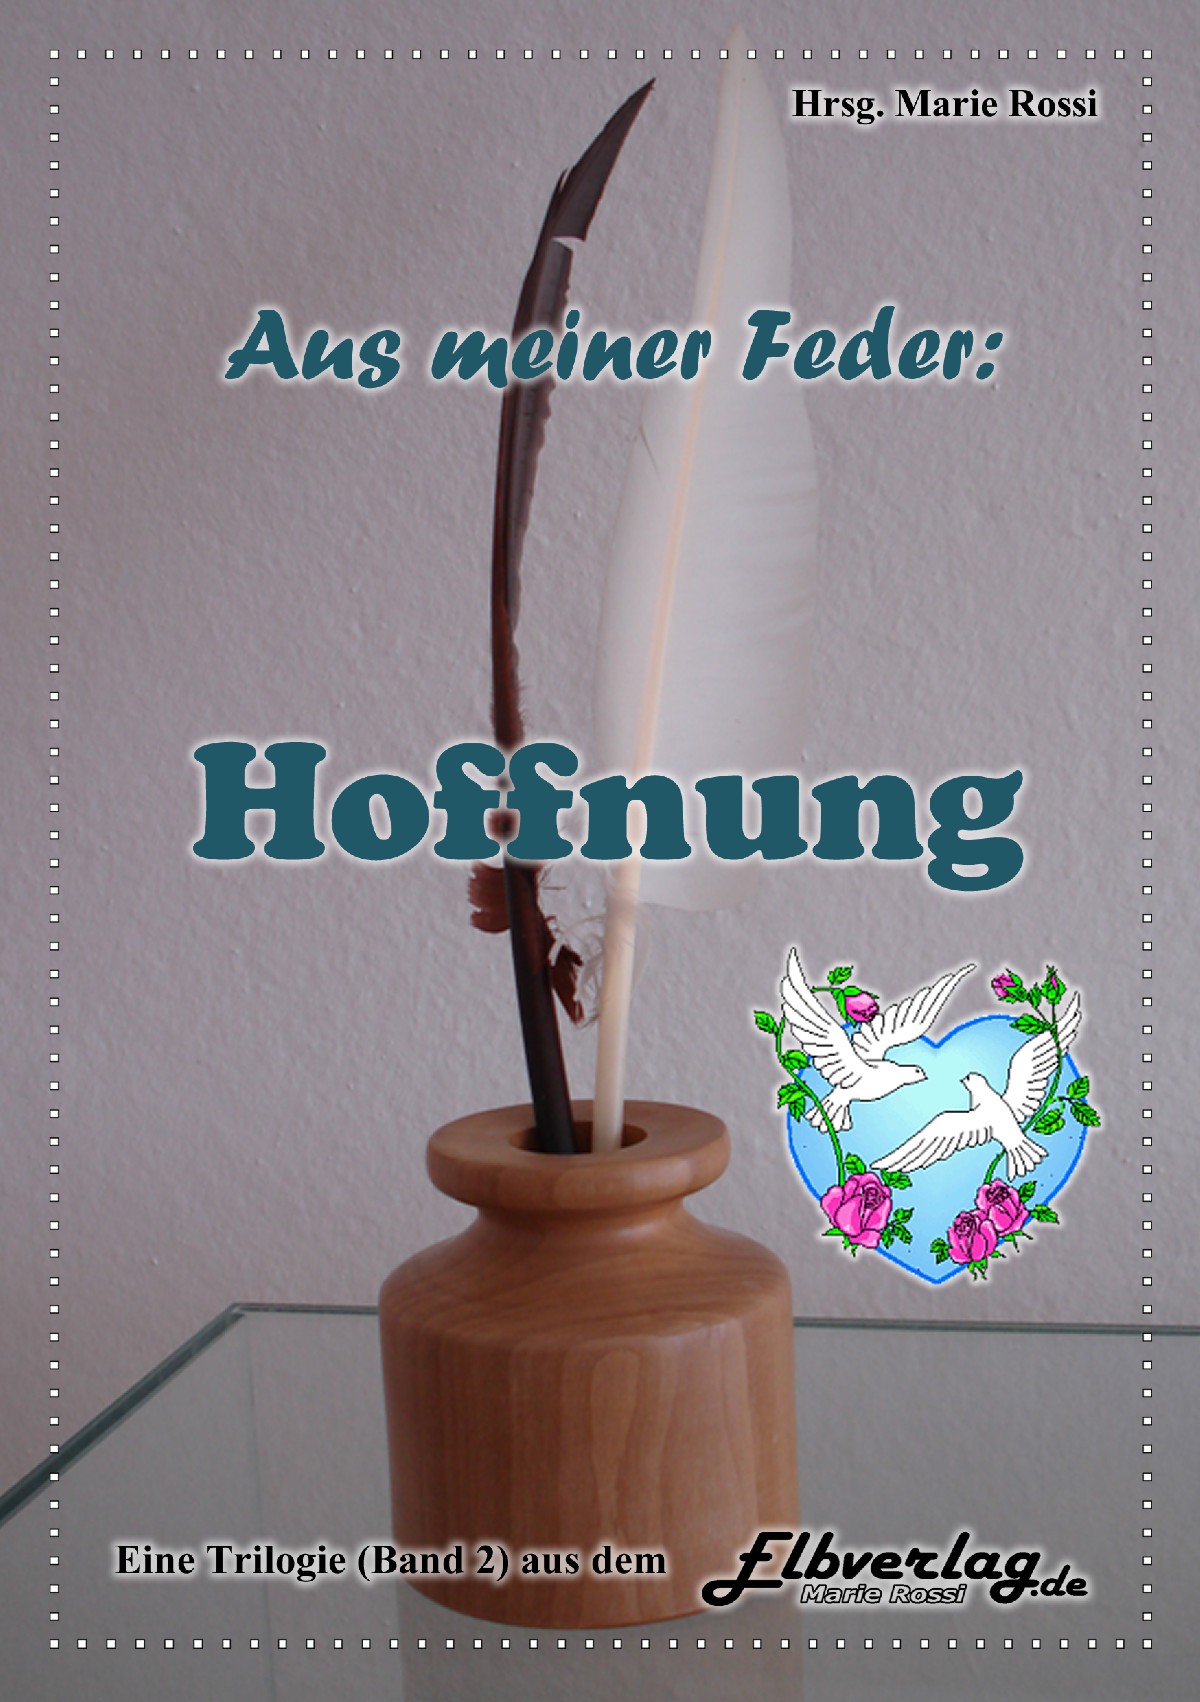 Hannelore Furch: Gesammelte Hoffnung (Gedicht). In: Aus meiner Feder: Hoffnung. Marie Rossi, Elbverlag (Hrsg). Magdeburg 2014. S. 88.